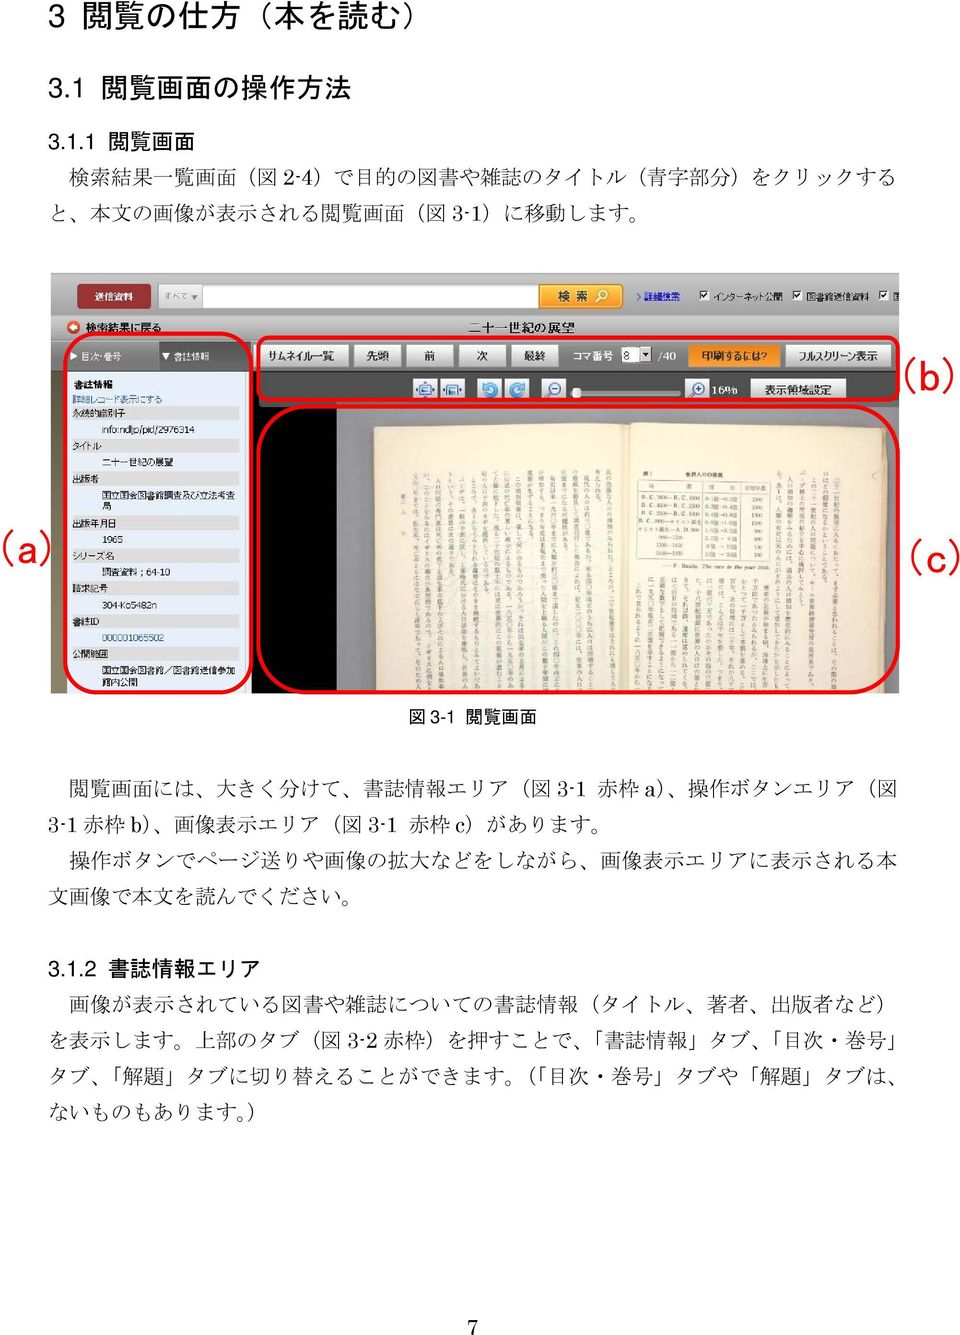 1 閲 覧 画 面 検 索 結 果 一 覧 画 面 ( 図 2-4)で 目 的 の 図 書 や 雑 誌 のタイトル( 青 字 部 分 )をクリックする と 本 文 の 画 像 が 表 示 される 閲 覧 画 面 ( 図 3-1)に 移 動 します (b) (a) (c) 図 3-1 閲 覧